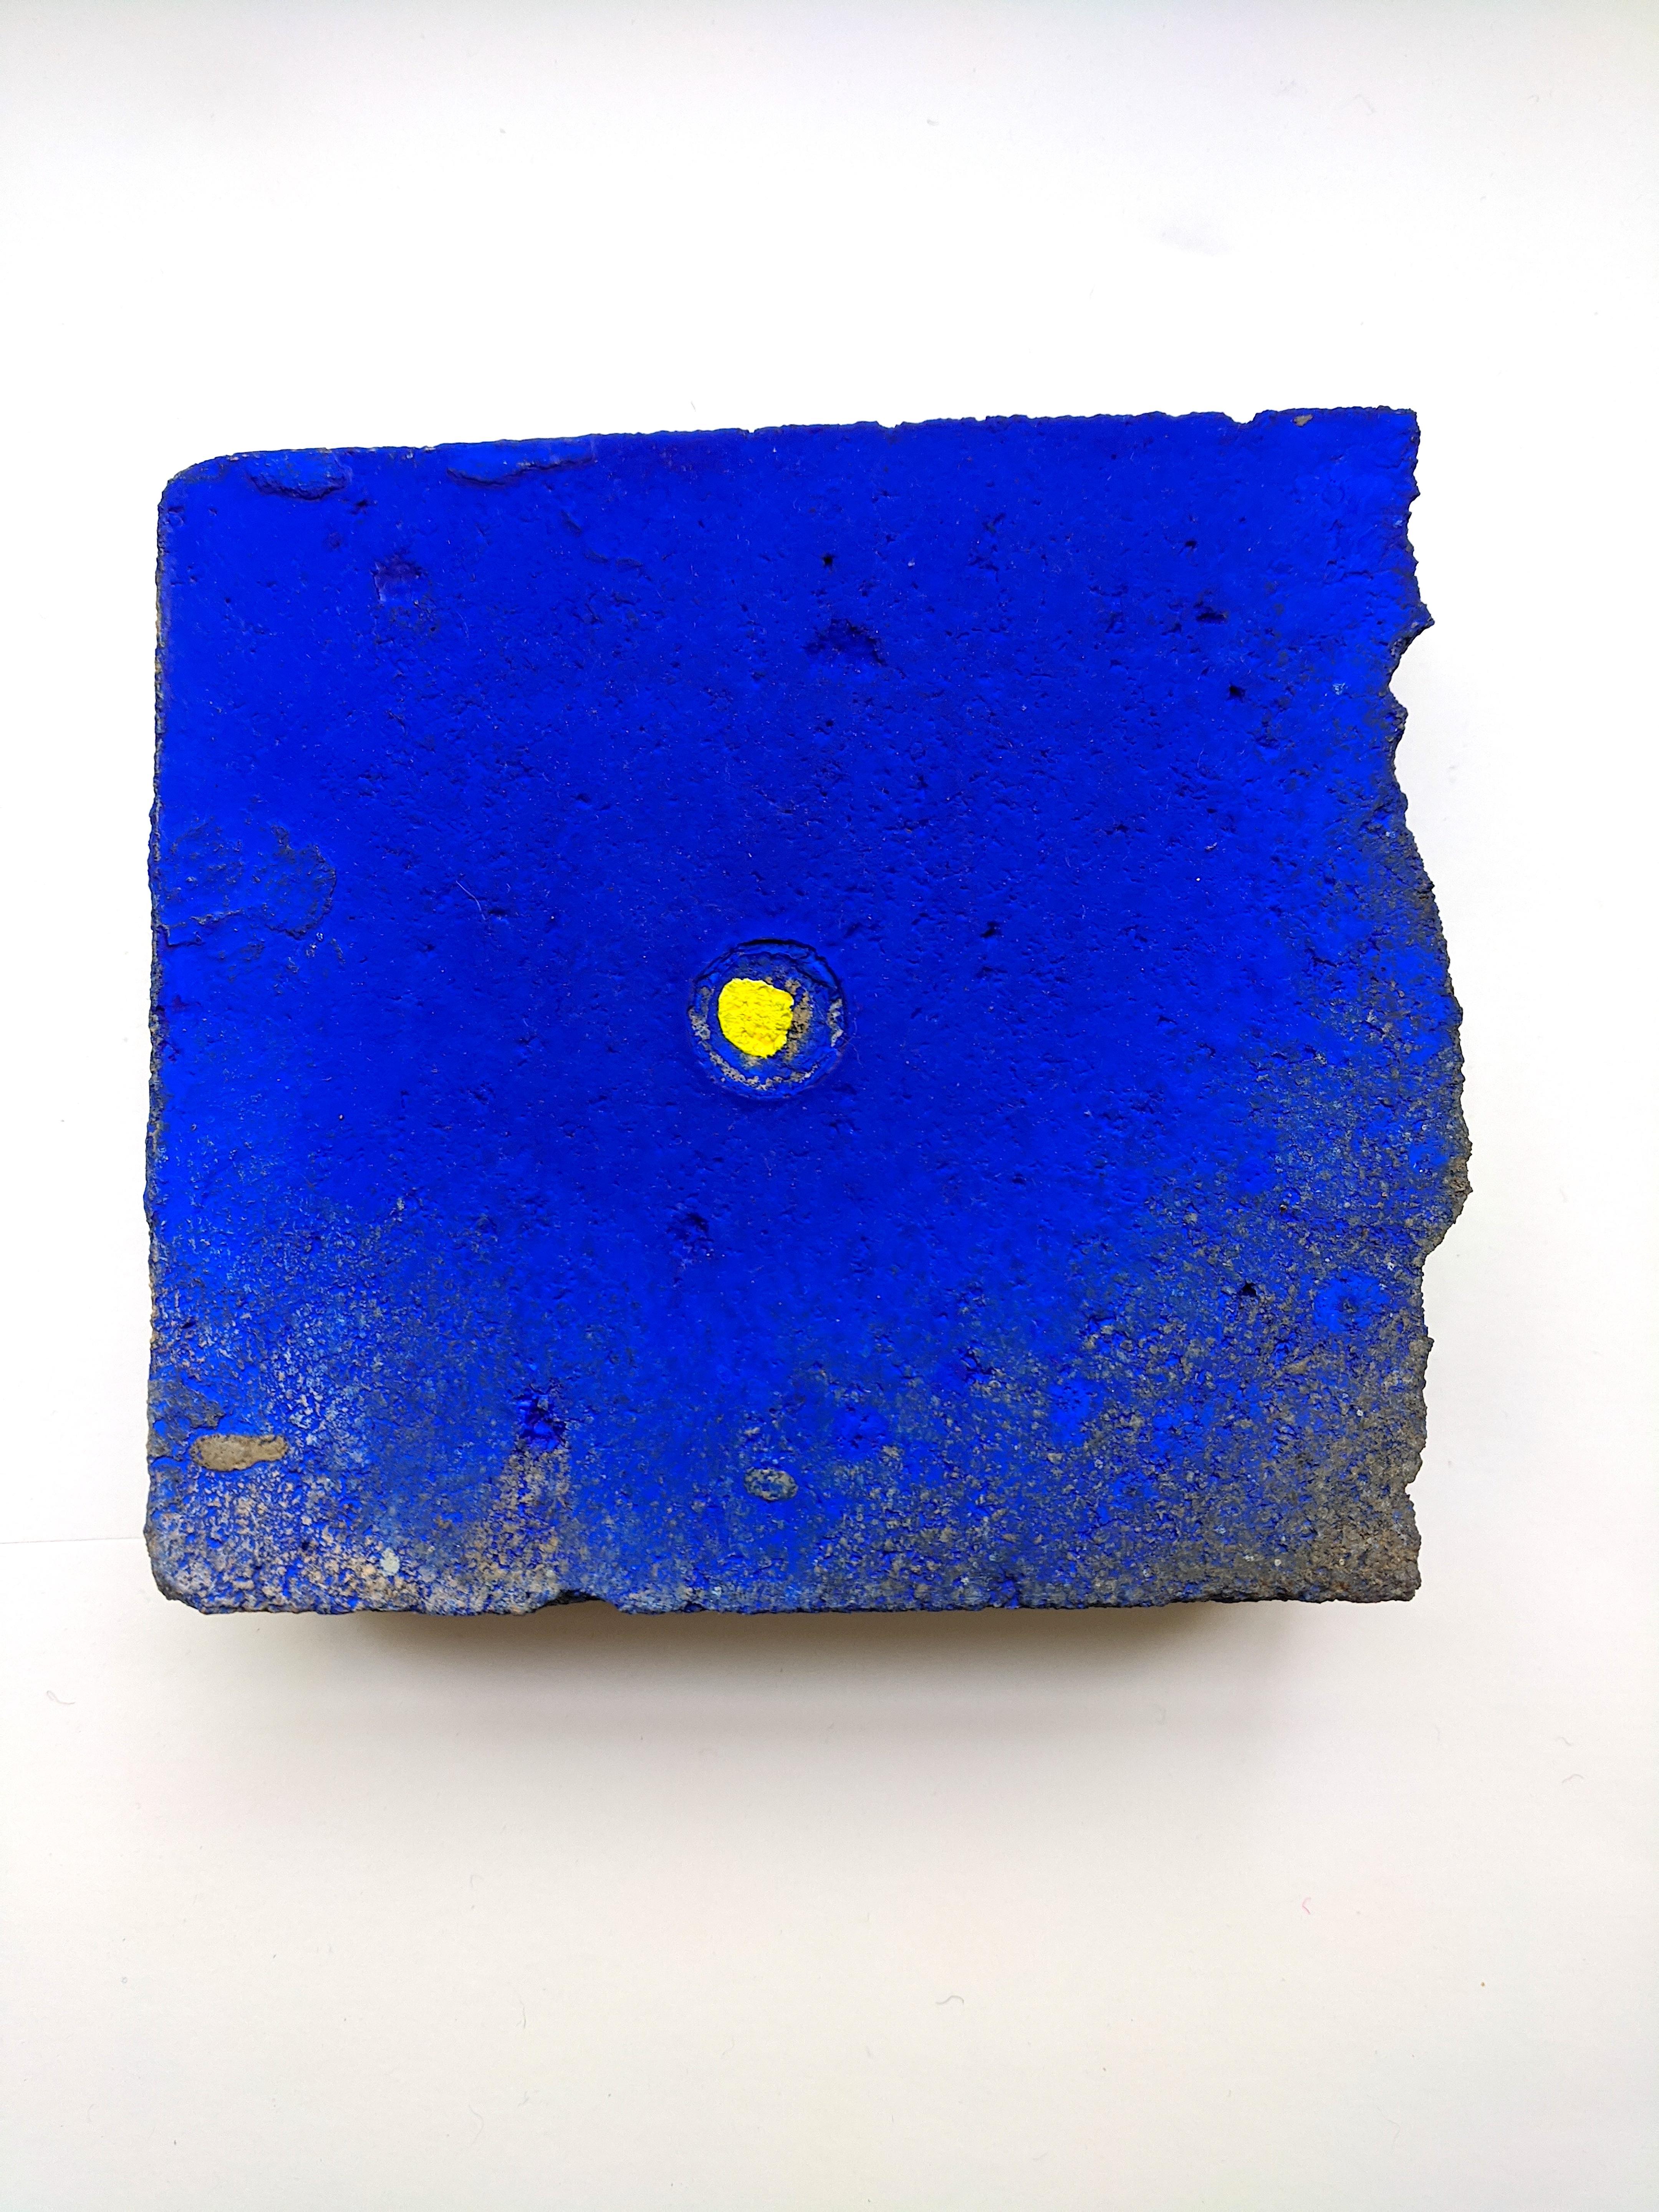 Seeking the Sound of Cobalt Blue est une série de peintures et de sculptures qui ont été créées depuis le printemps 2014. 

Ellen Hackl Fagan_SeekingtheSoundofCobaltBlue_Found Object, 2020, encre, pigment, acrylique sur pavé trouvé_ 4.25 x 5.5 x 1.5